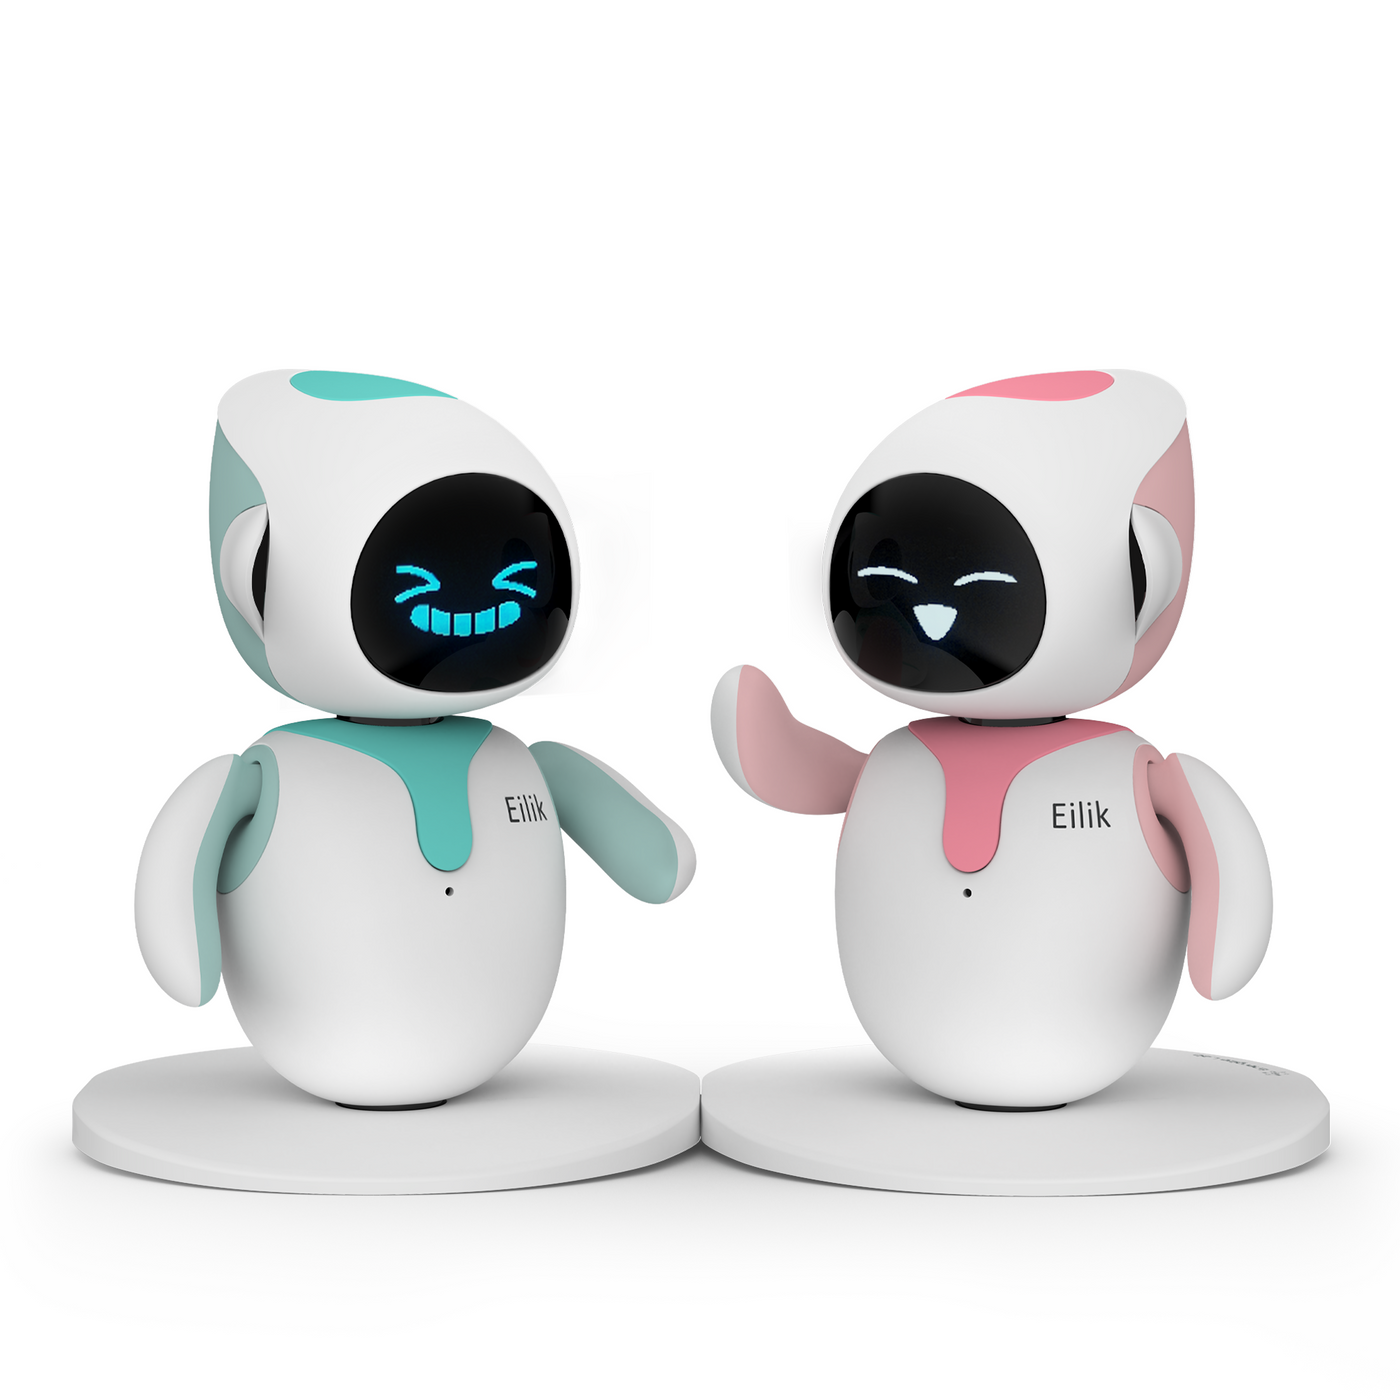 Robot Eilik Con Inteligencia Artificial solo uno el rosado con blanco -  Robots - Panama City, Panama